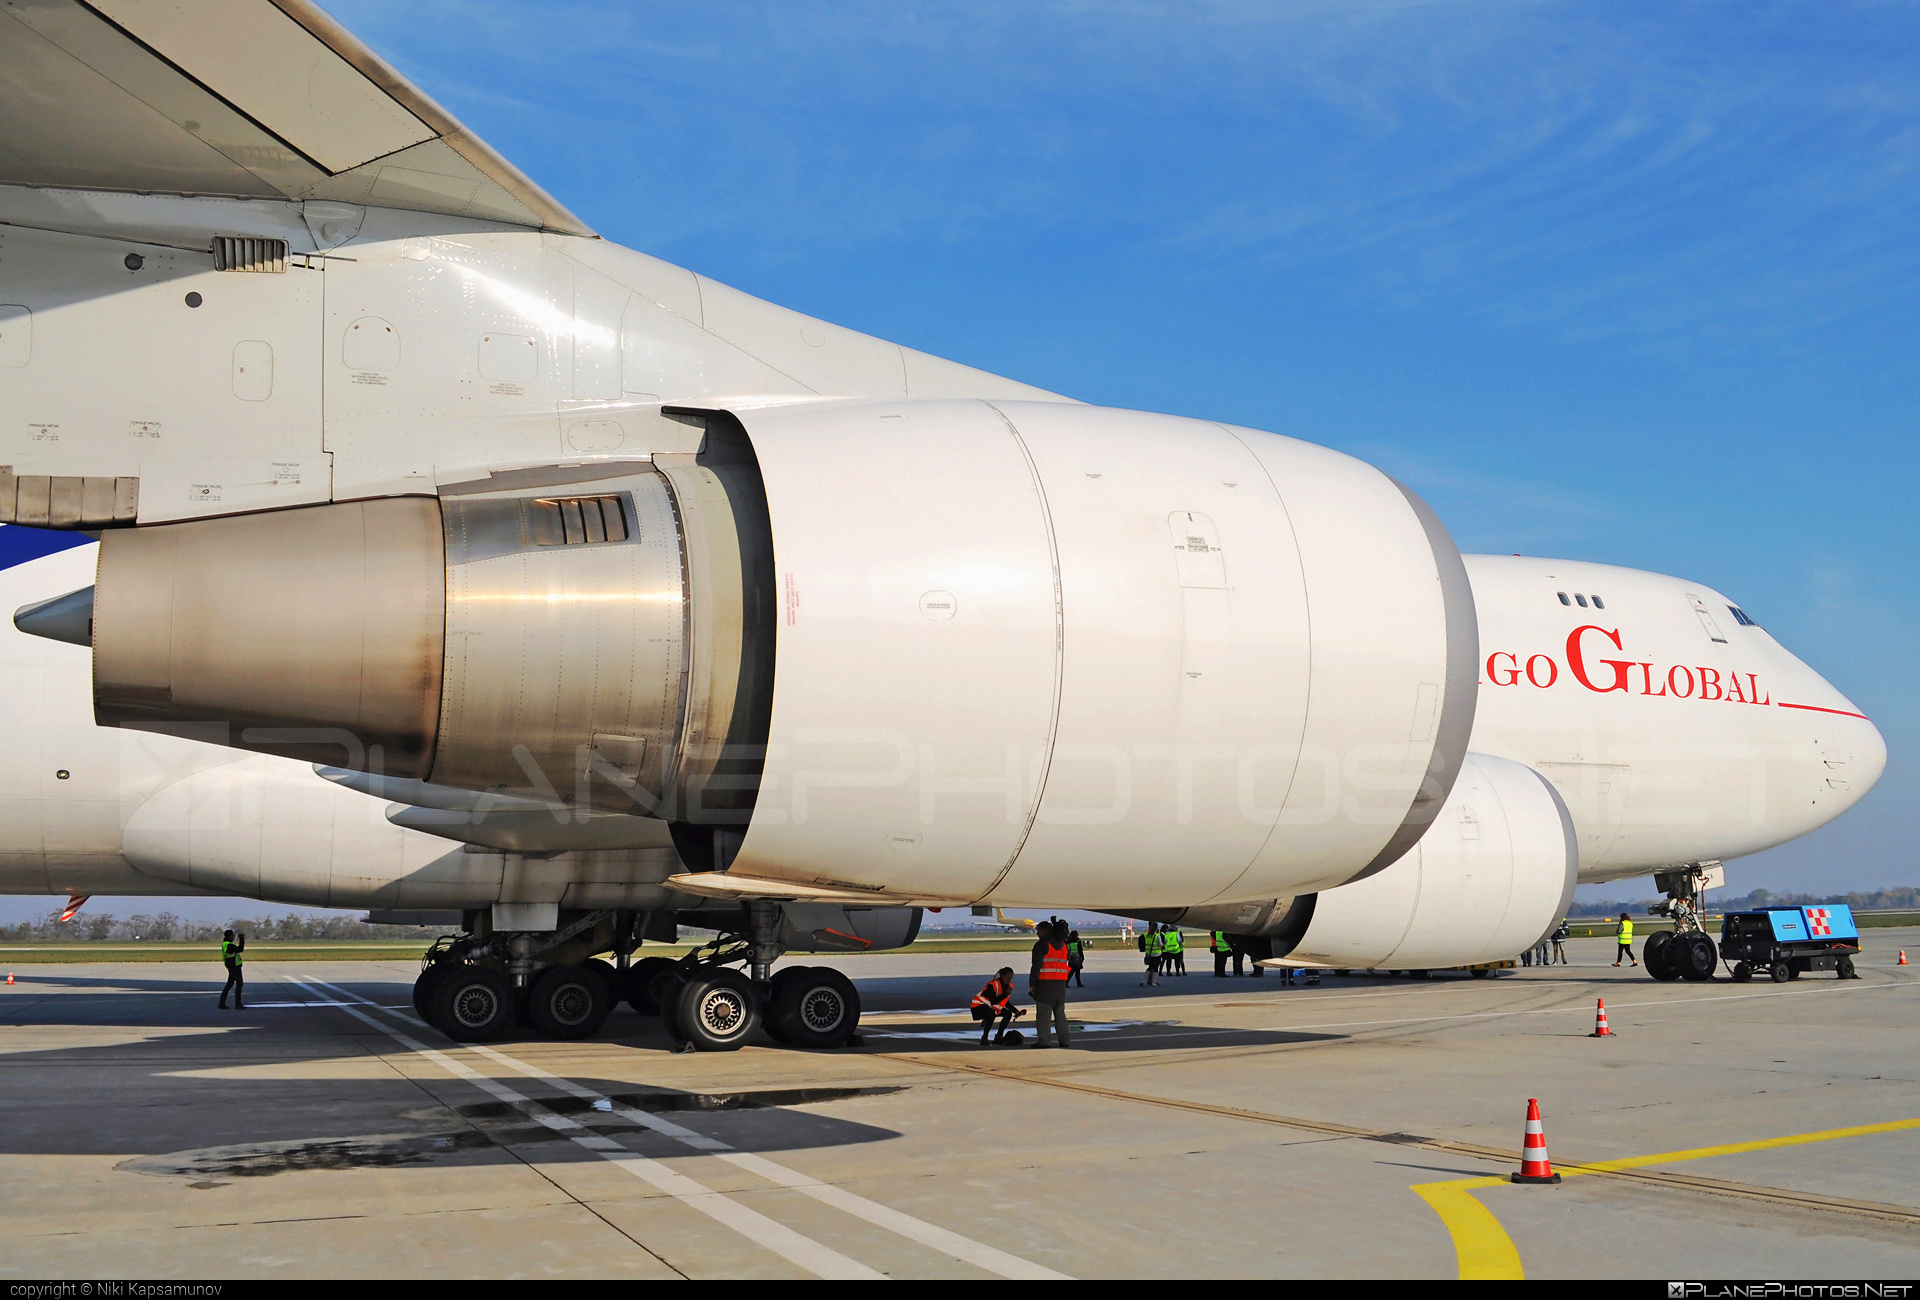 Boeing 747-400F - OM-ACA operated by Air Cargo Global #b747 #boeing #boeing747 #jumbo